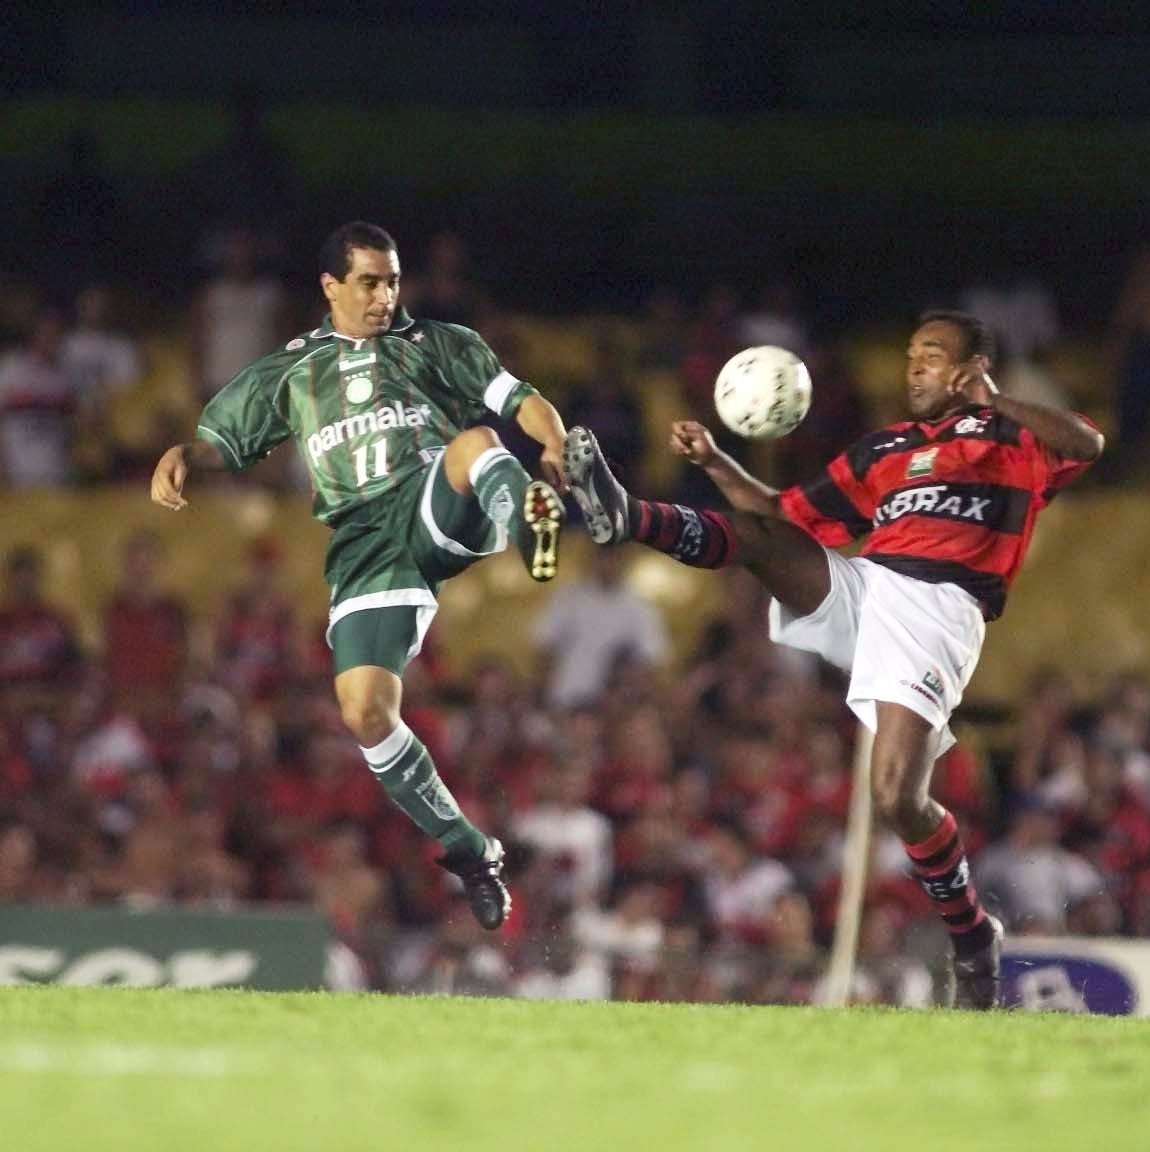 Flamengo x Palmeiras: quem venceu mais vezes em finais e jogos de